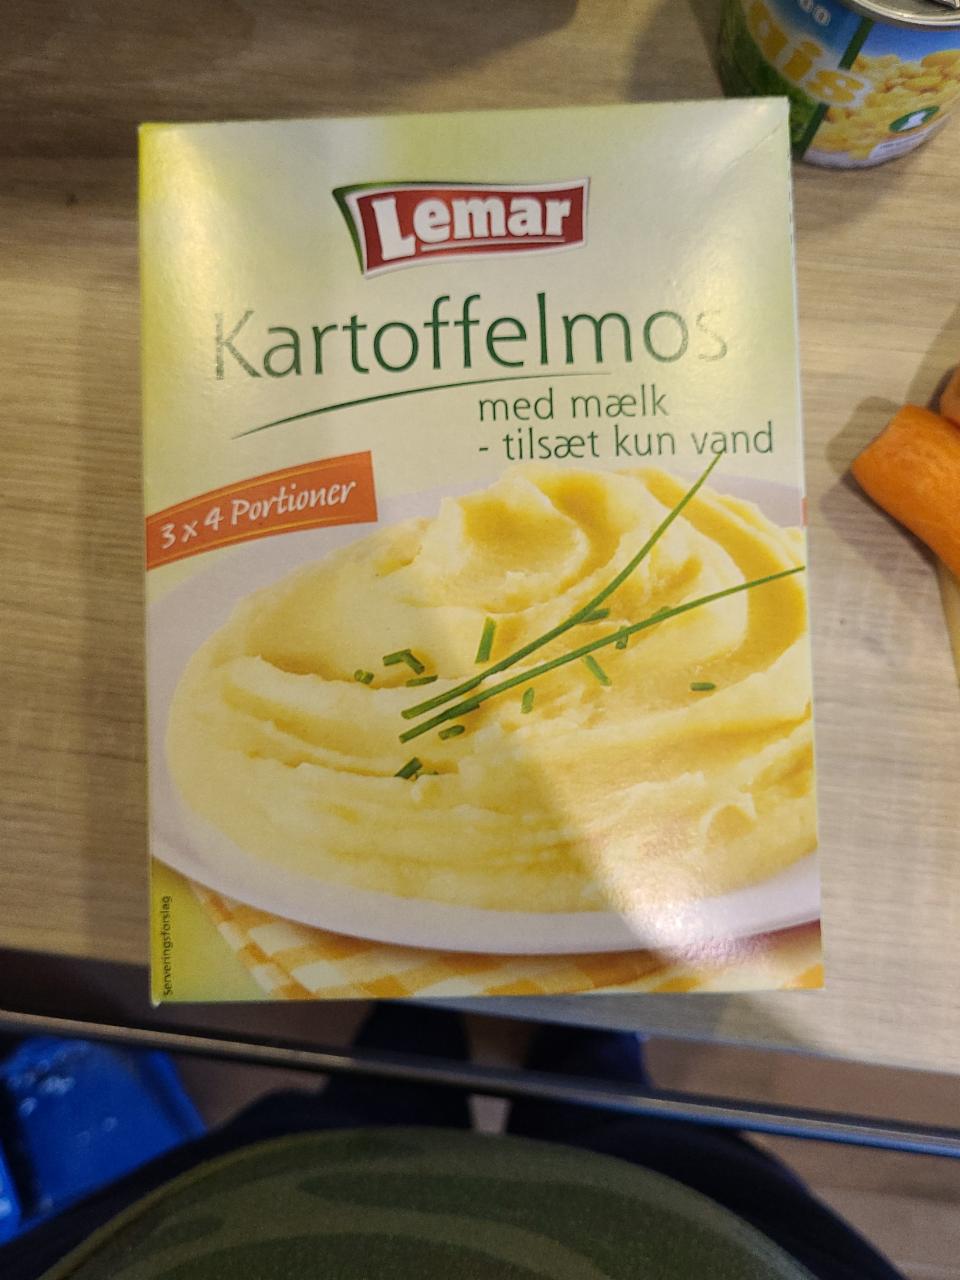 Фото - картофельное пюре с молоком Lemar